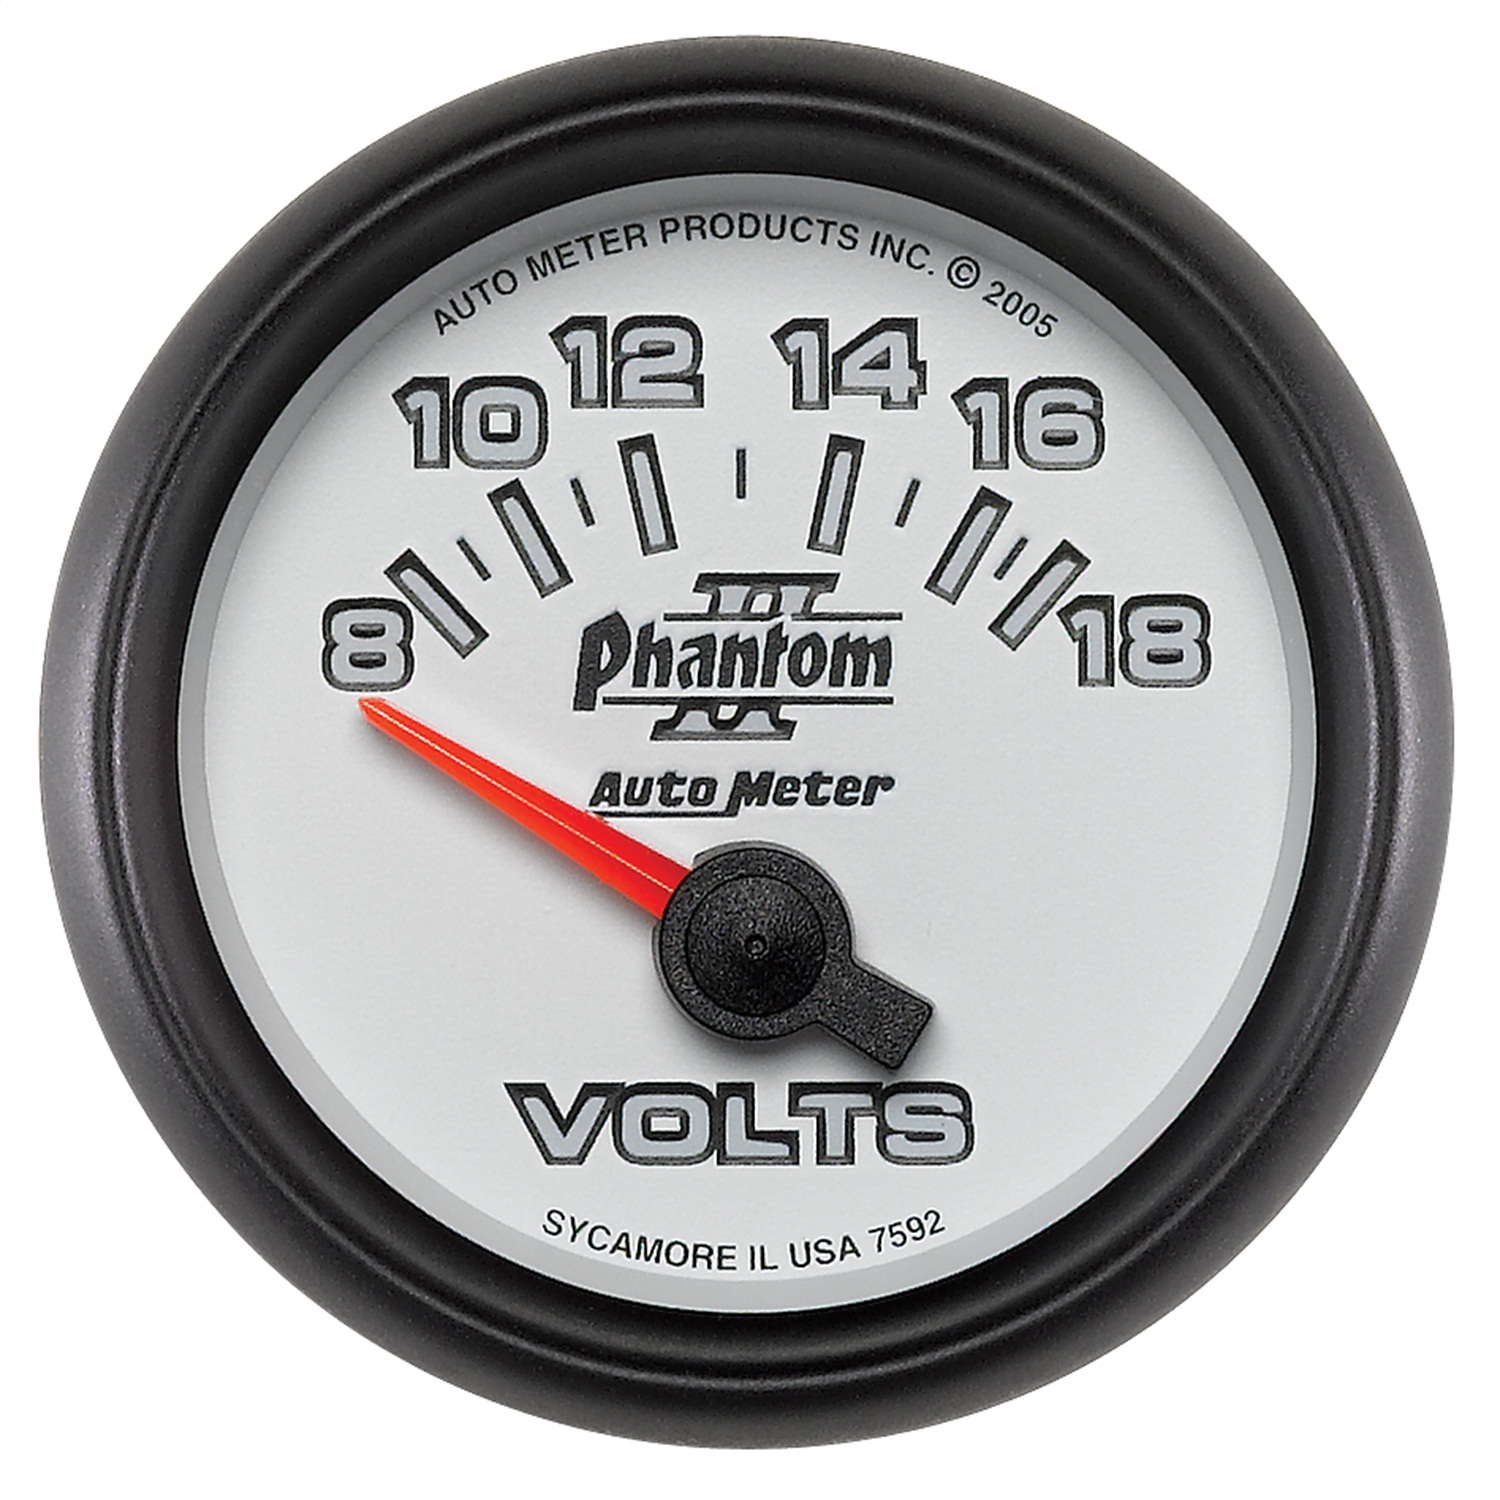 Auto Meter Auto Meter 7592 Phantom II; Electric Voltmeter Gauge